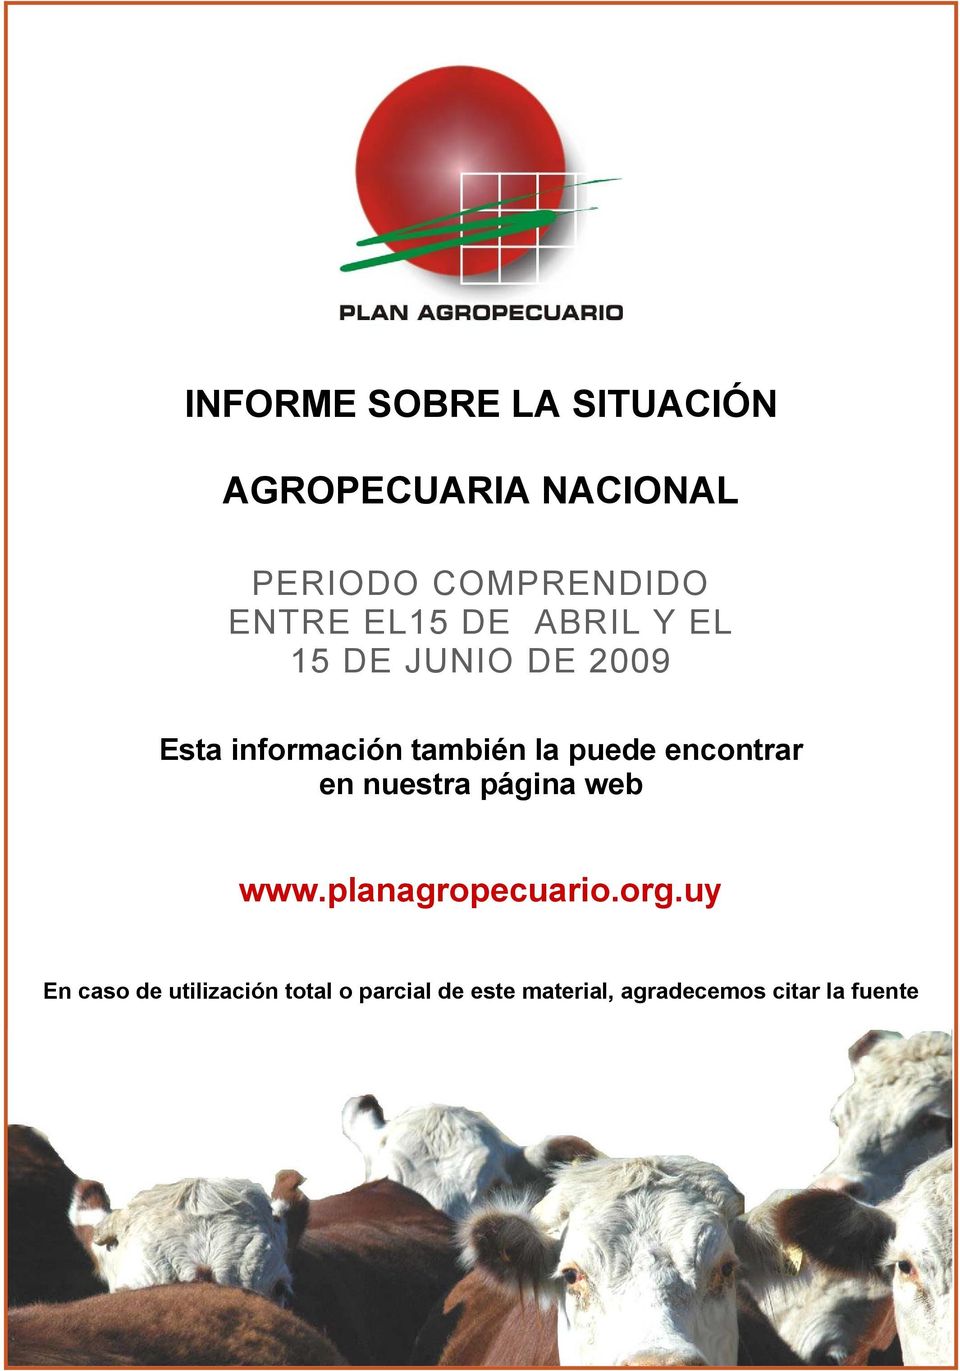 puede encontrar en nuestra página web www.planagropecuario.org.